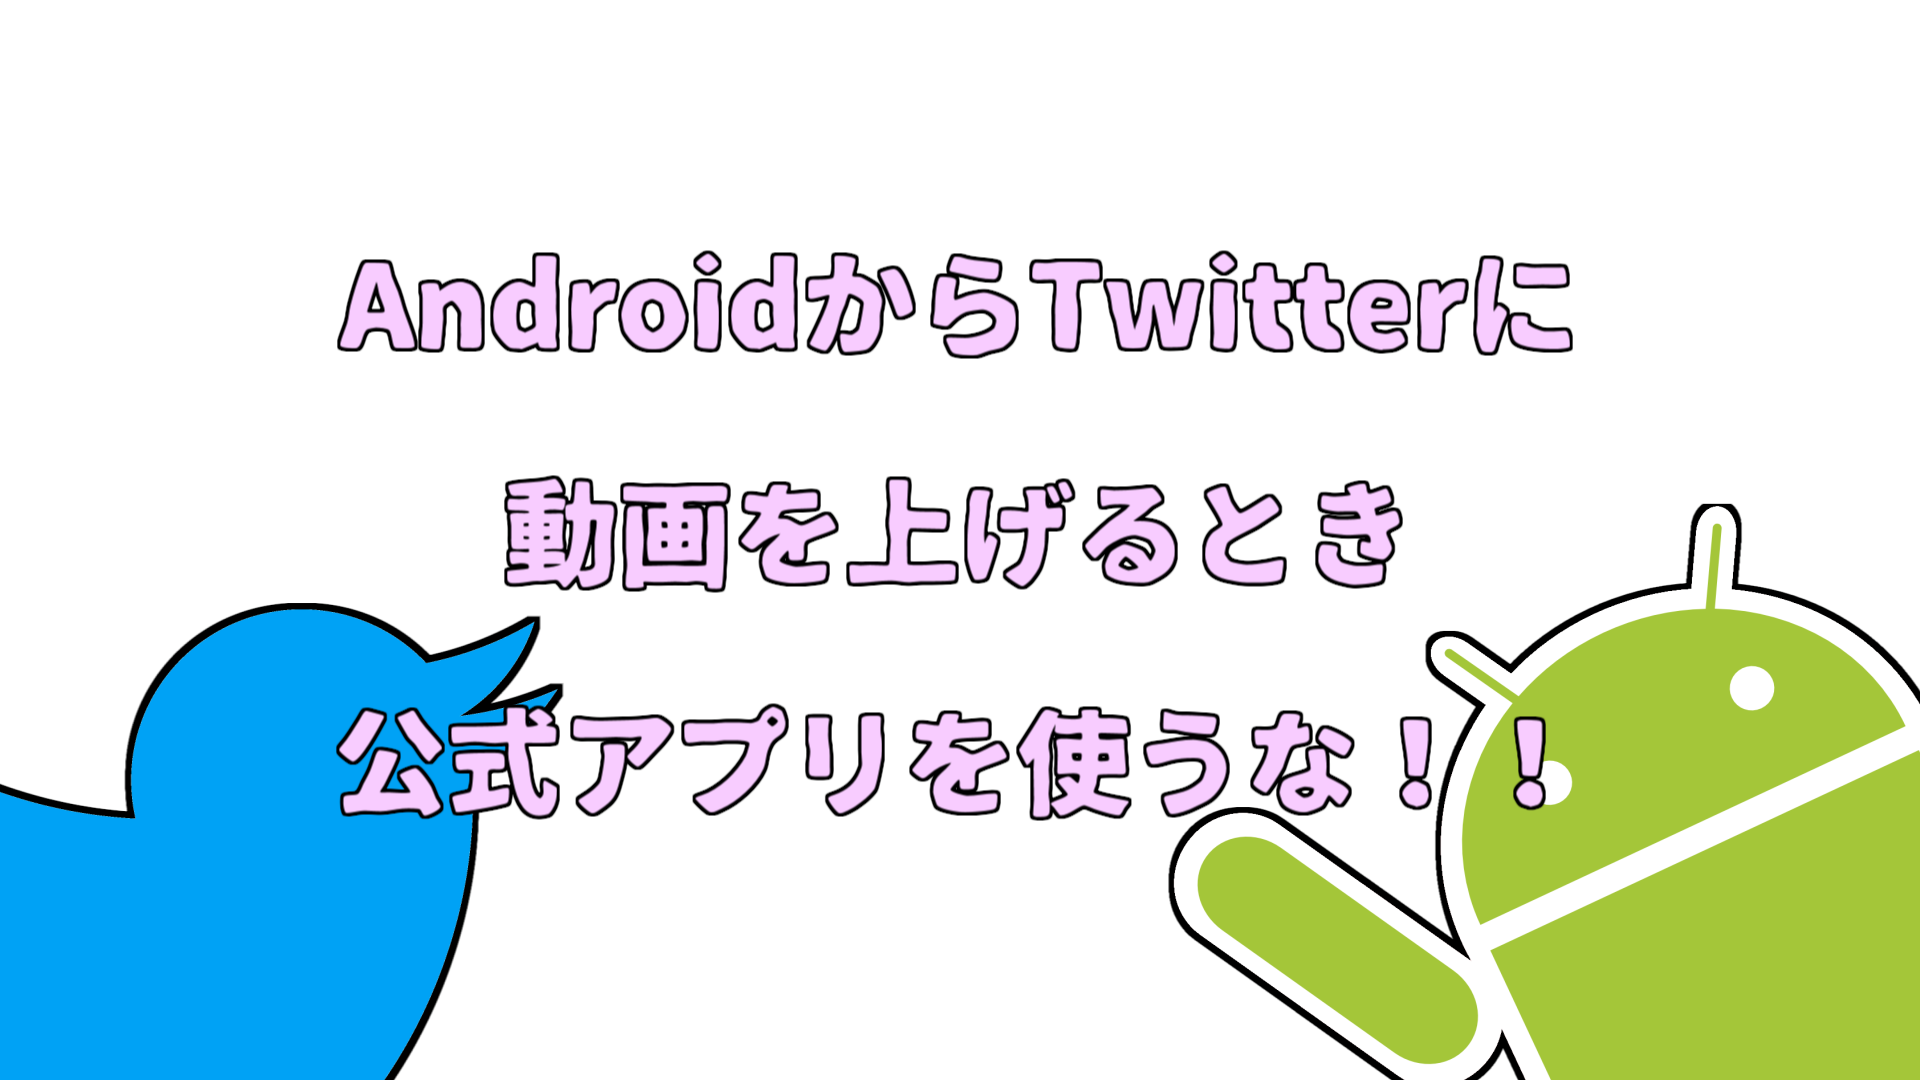 Twitter 動画 60fps